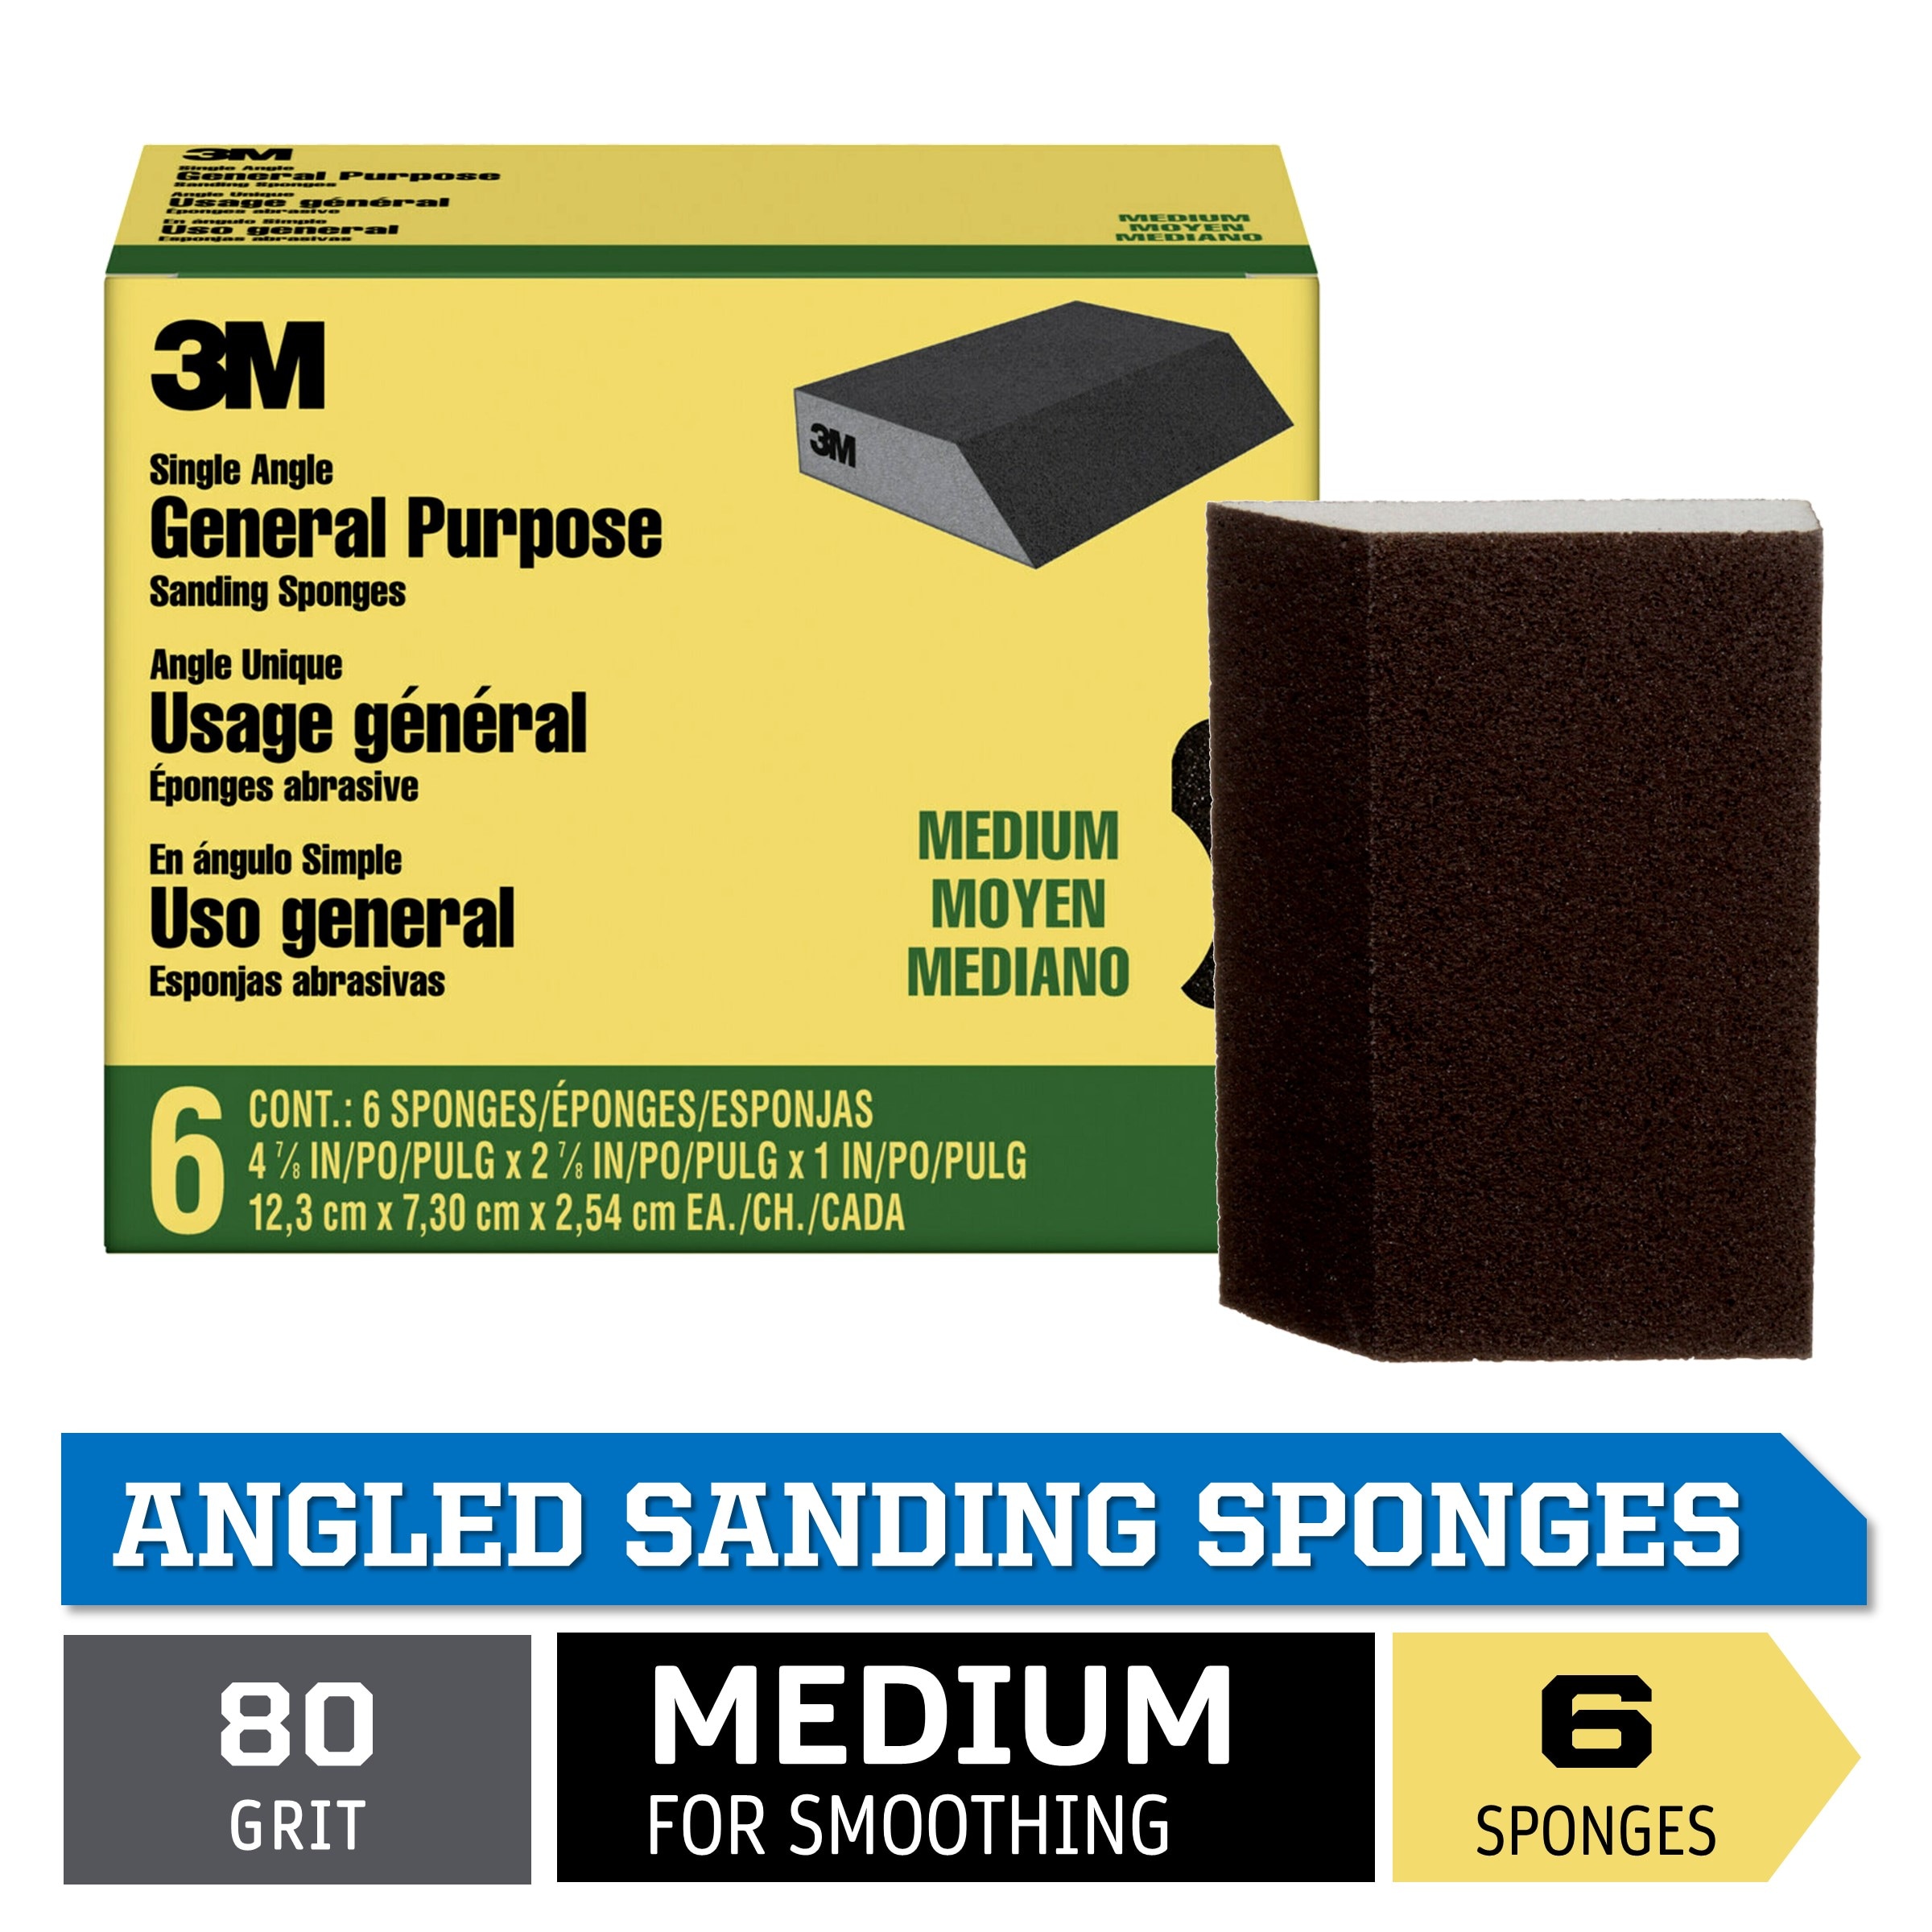 3M Drywall Sanding Sponge